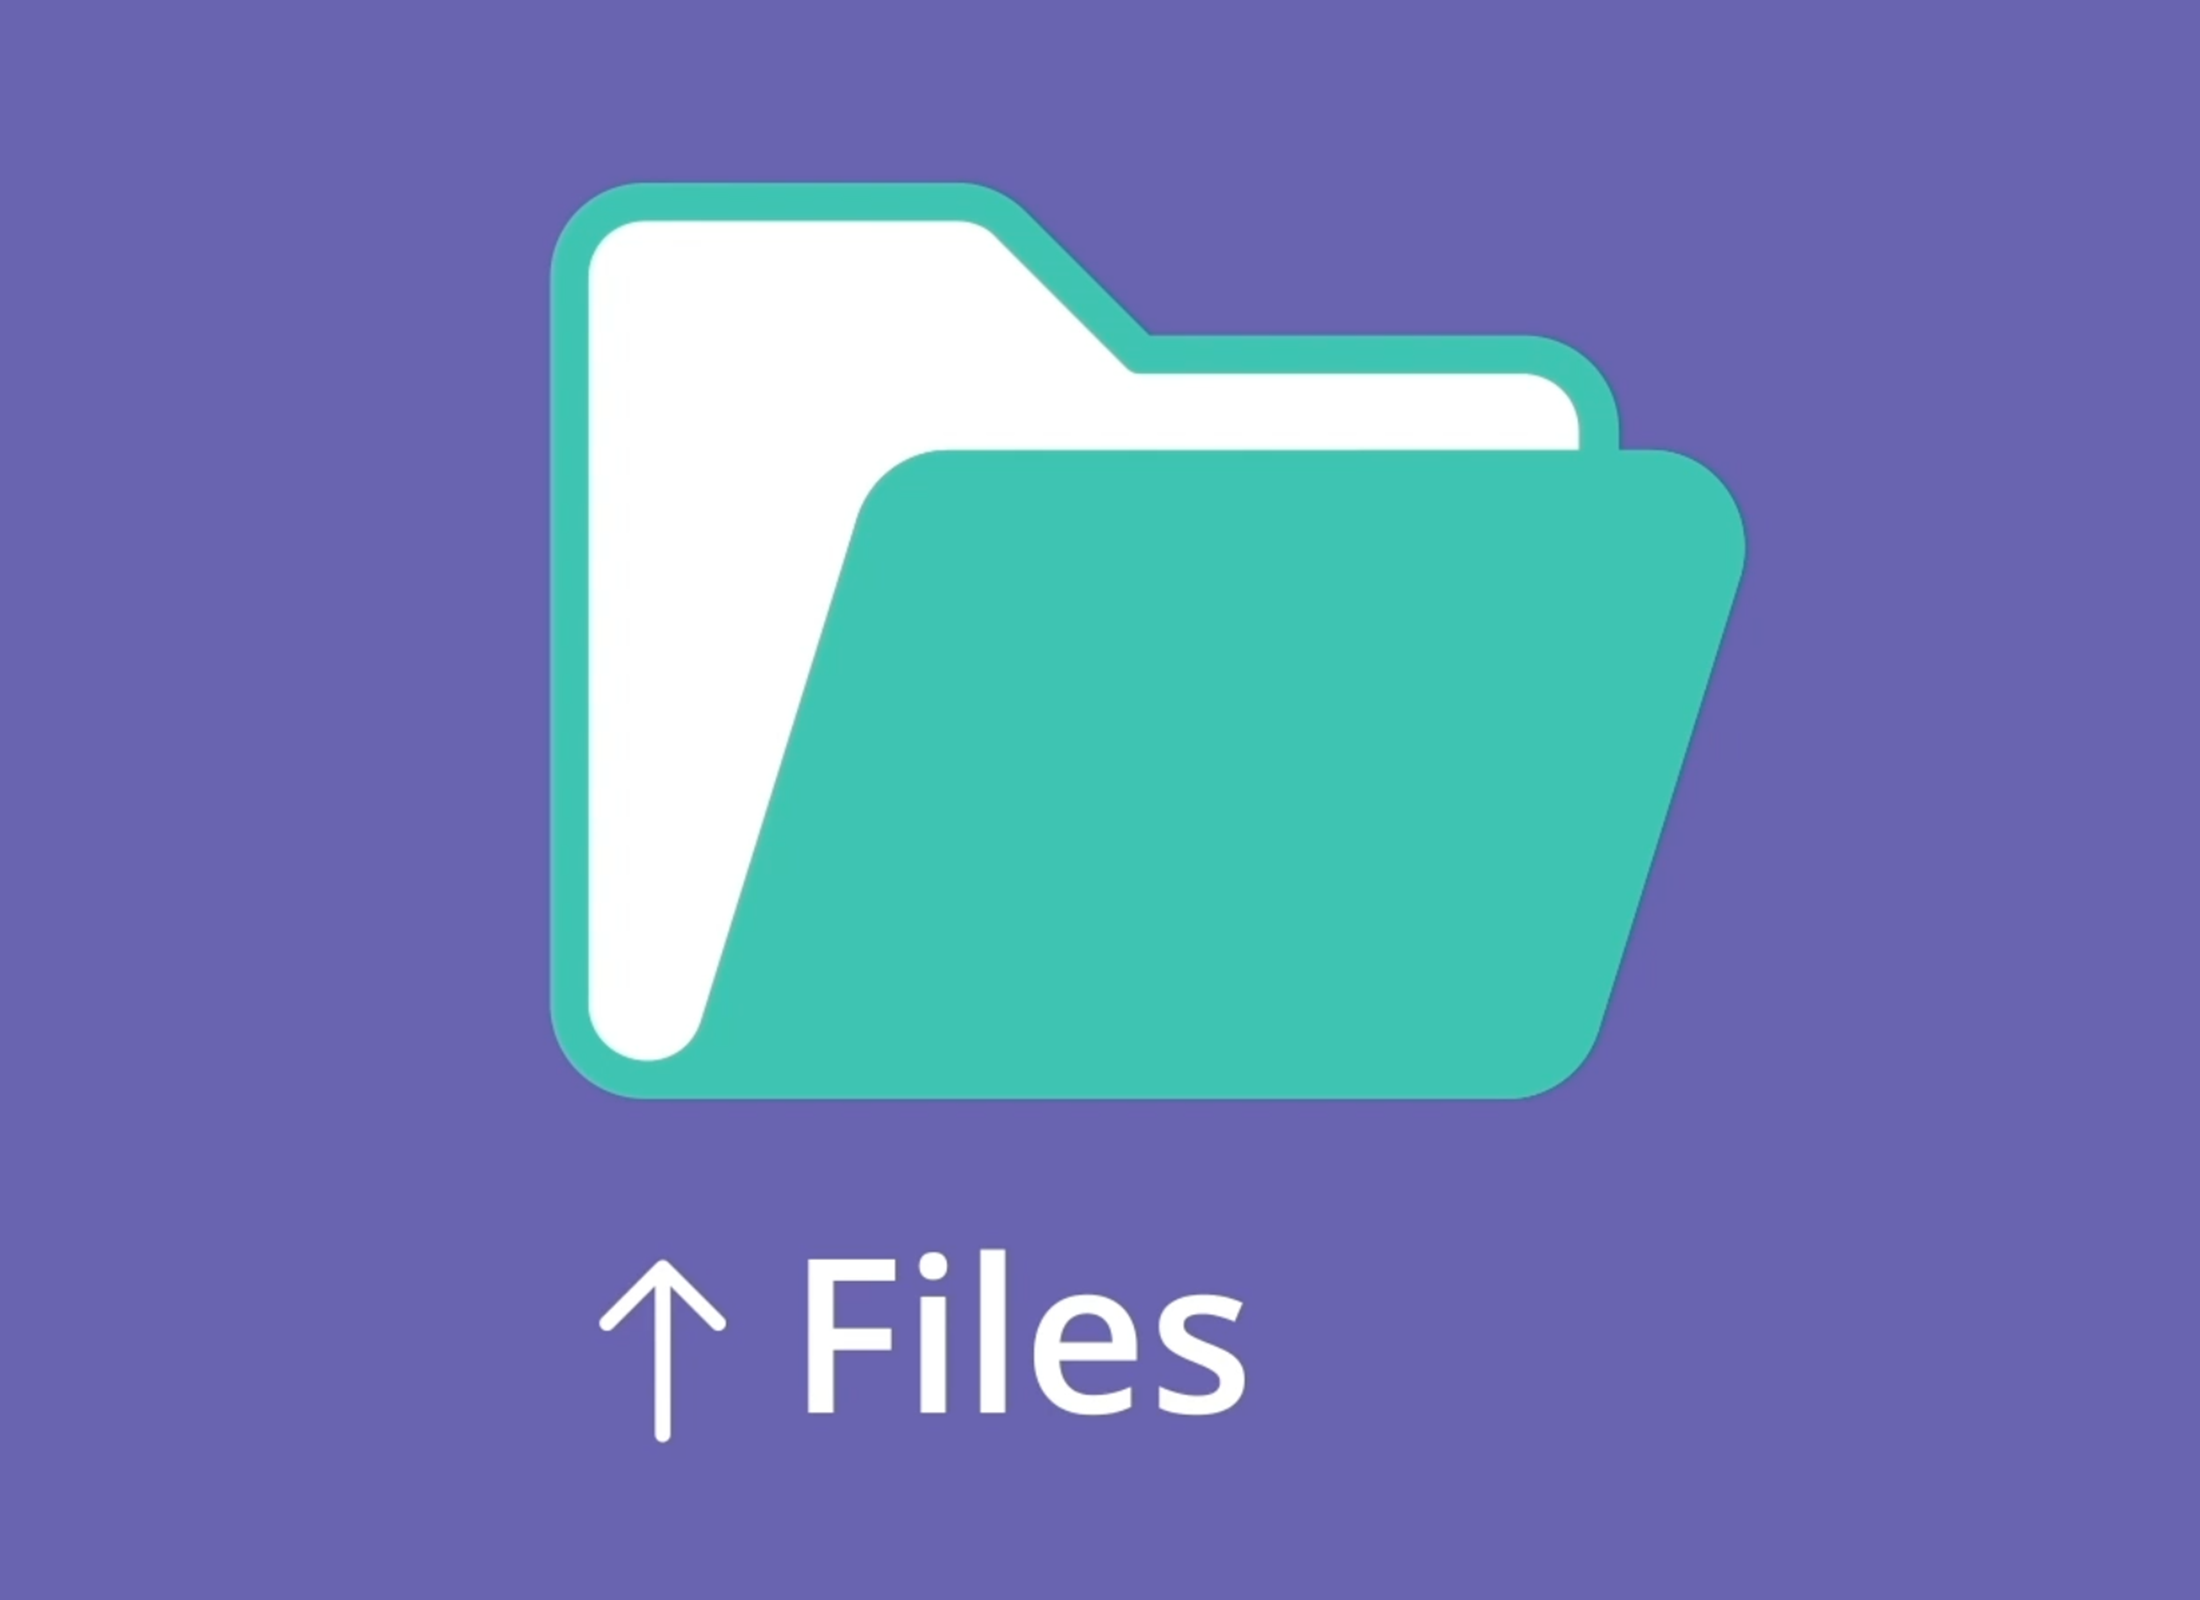 Files aiuta a tenere in ordine i tuoi documenti